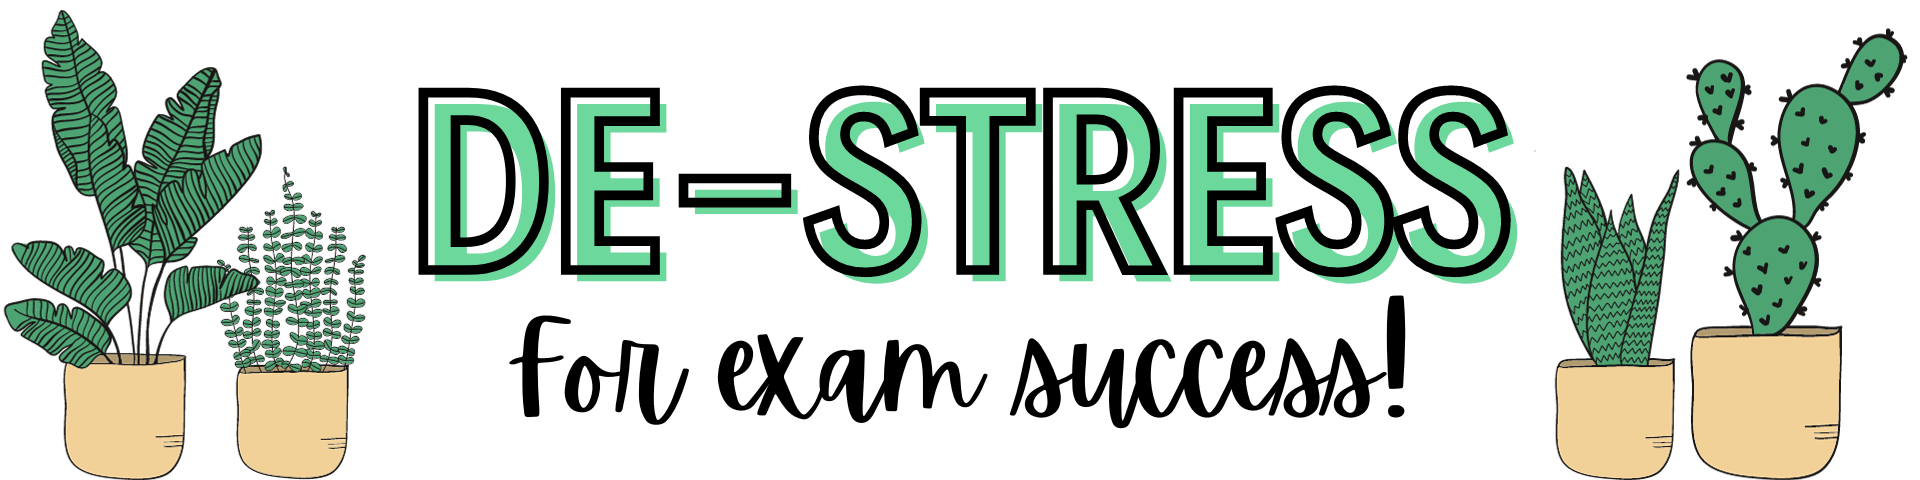 De-Stress for Exam Success 